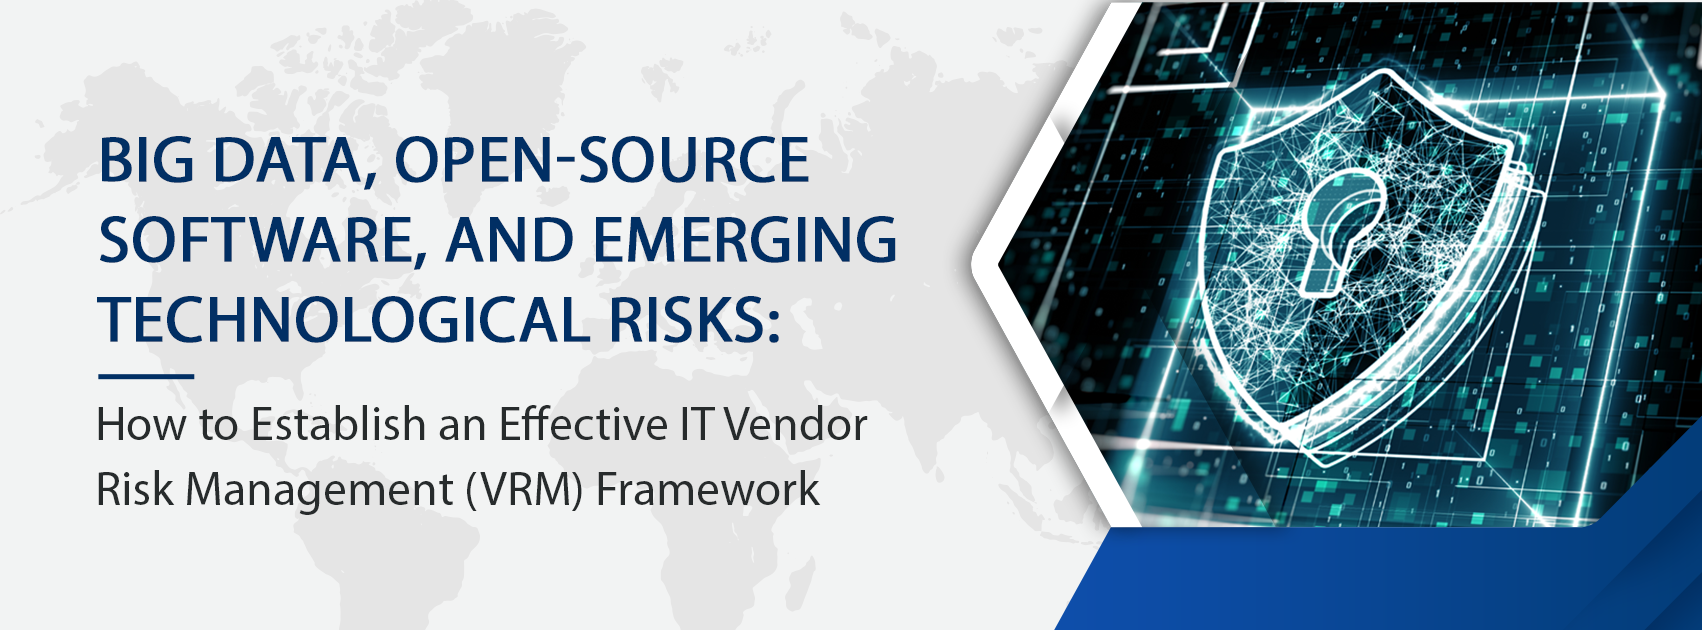 Vendor Risk Management Framework